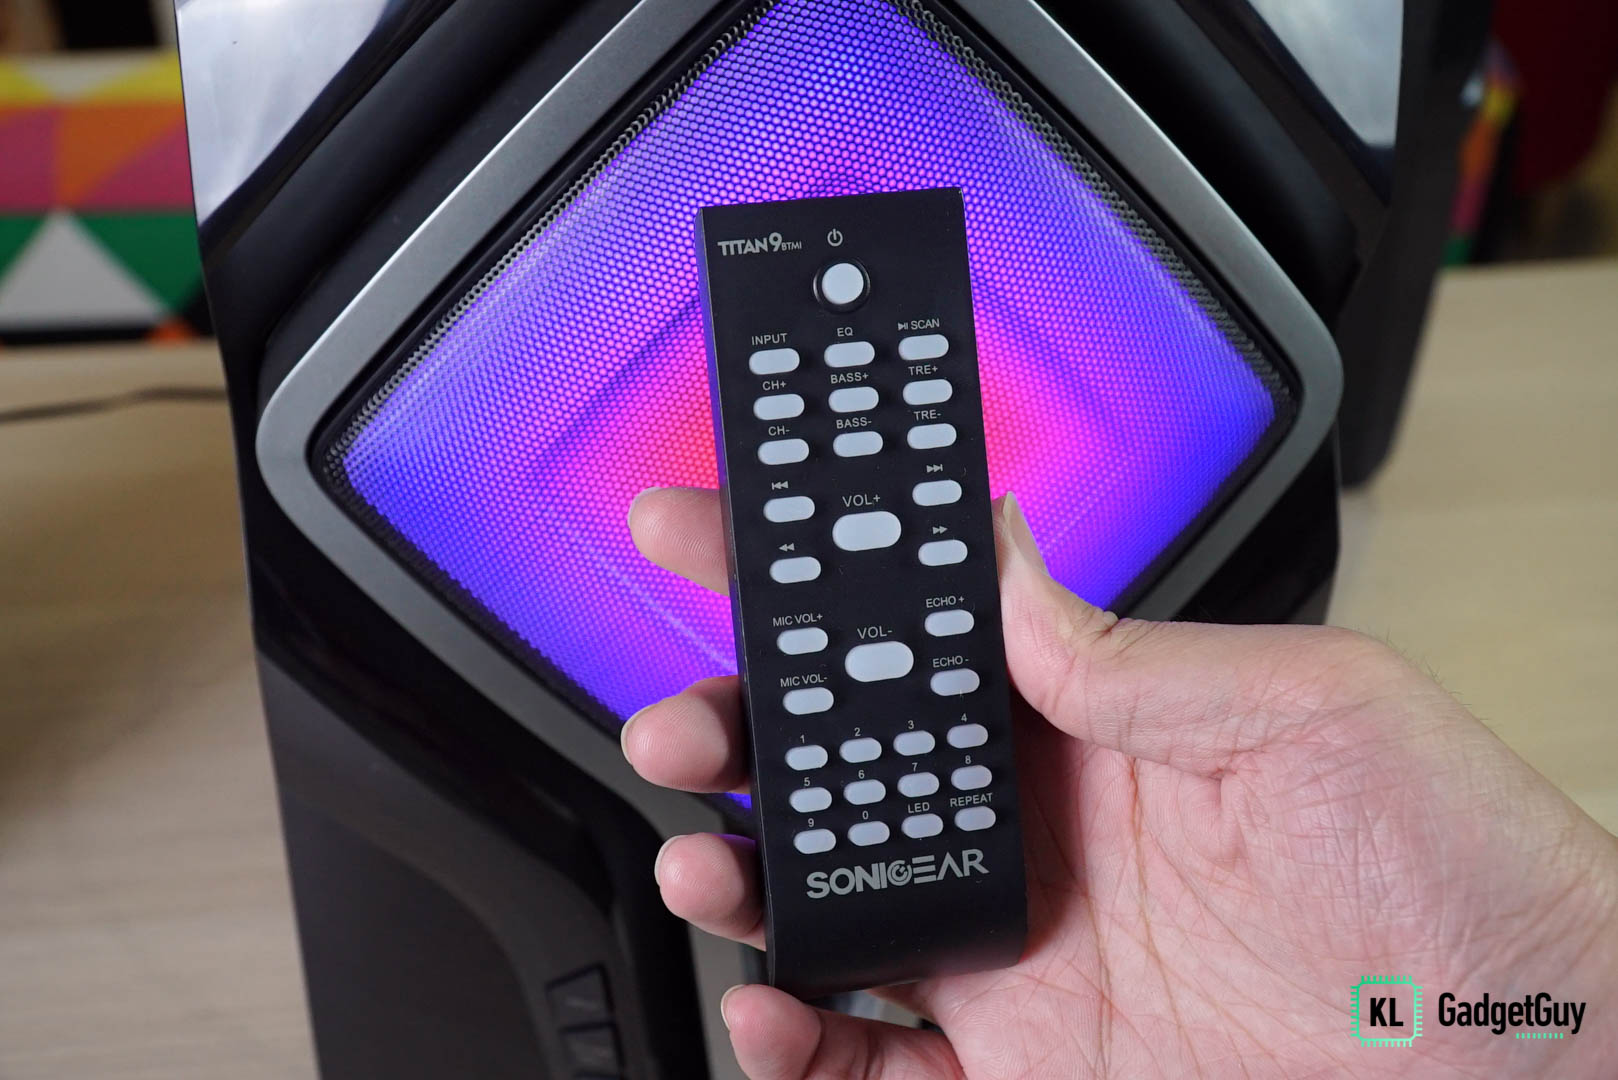 SonicGear Titan 9 speaker black remote control